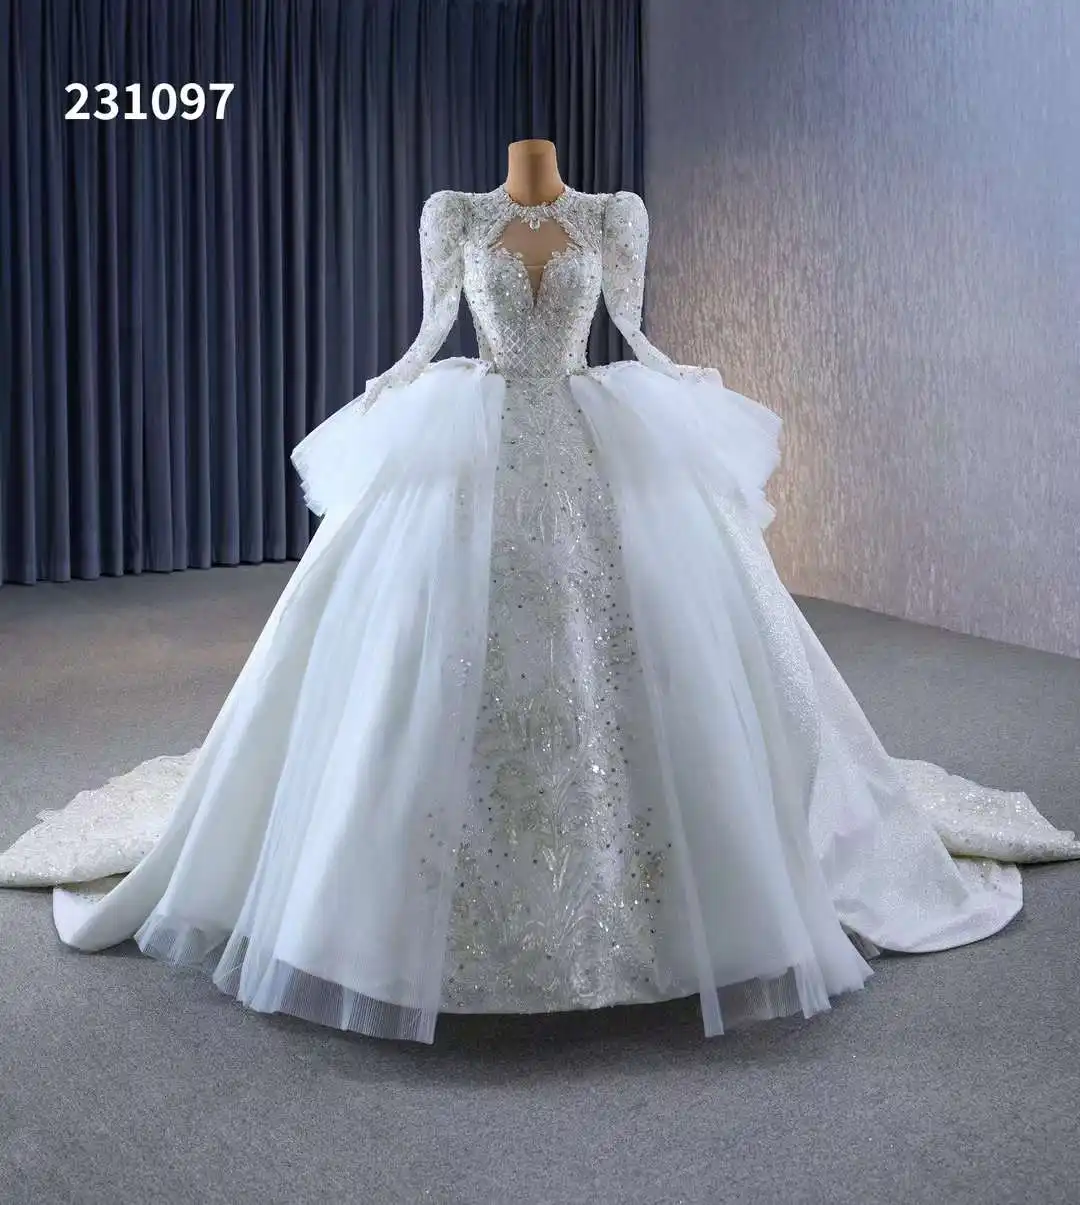 Feishiluo gaun pengantin gaun pengantin manik berlian imitasi mewah gaun pengantin gaya istana gaun pengantin gading gaun pengantin kereta panjang